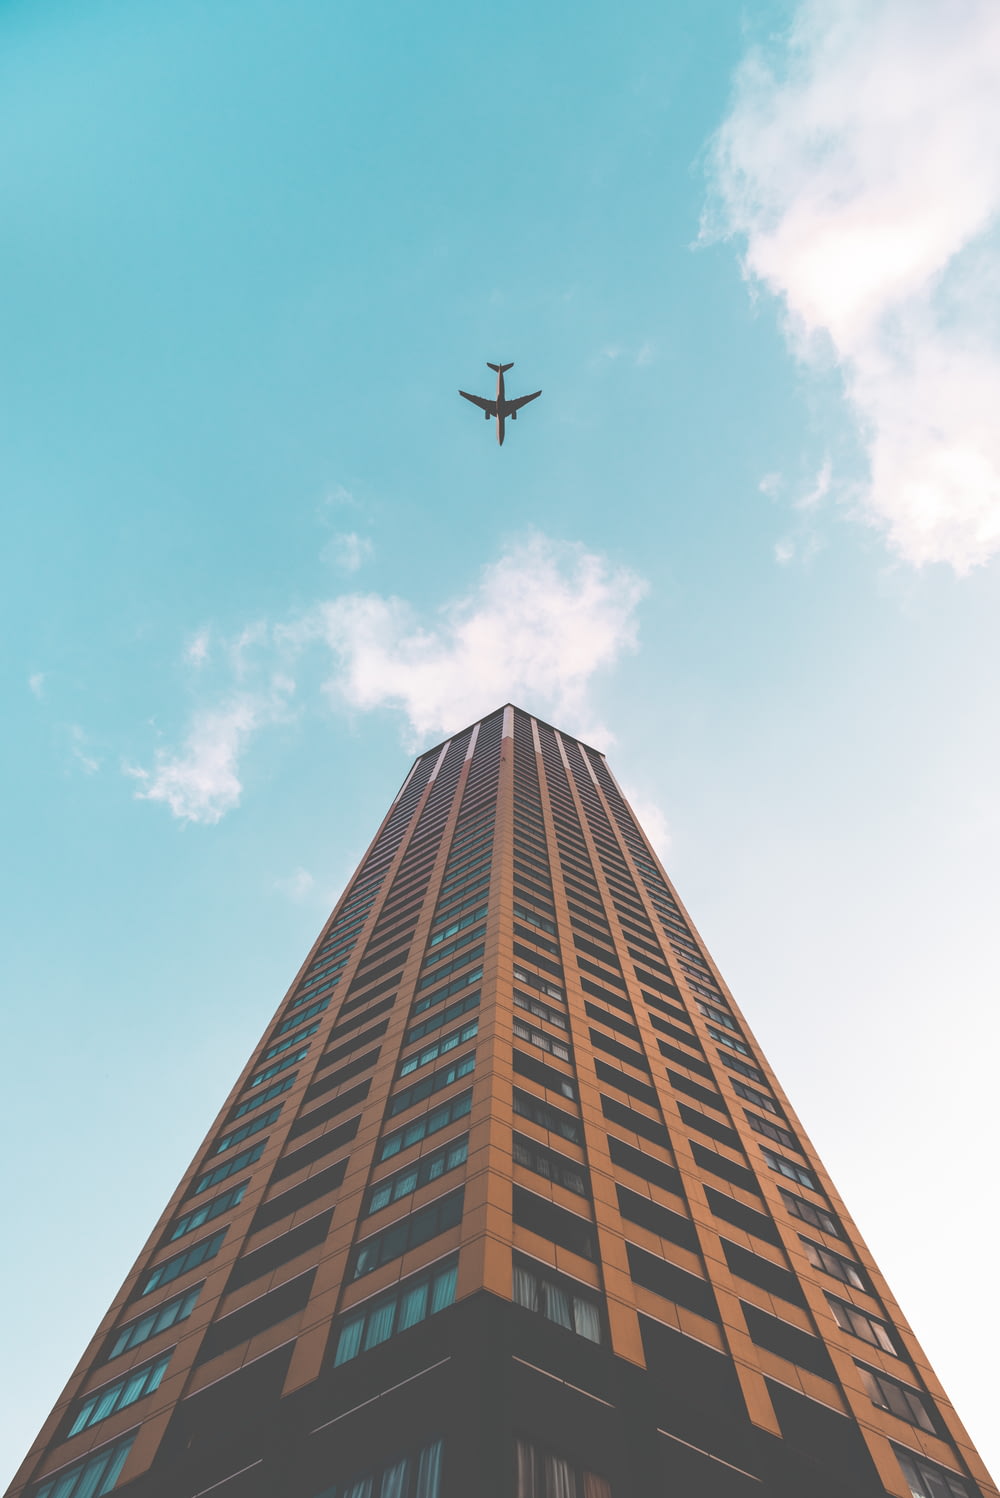 Vue de dessous d’un avion volant au-dessus d’un immeuble de grande hauteur